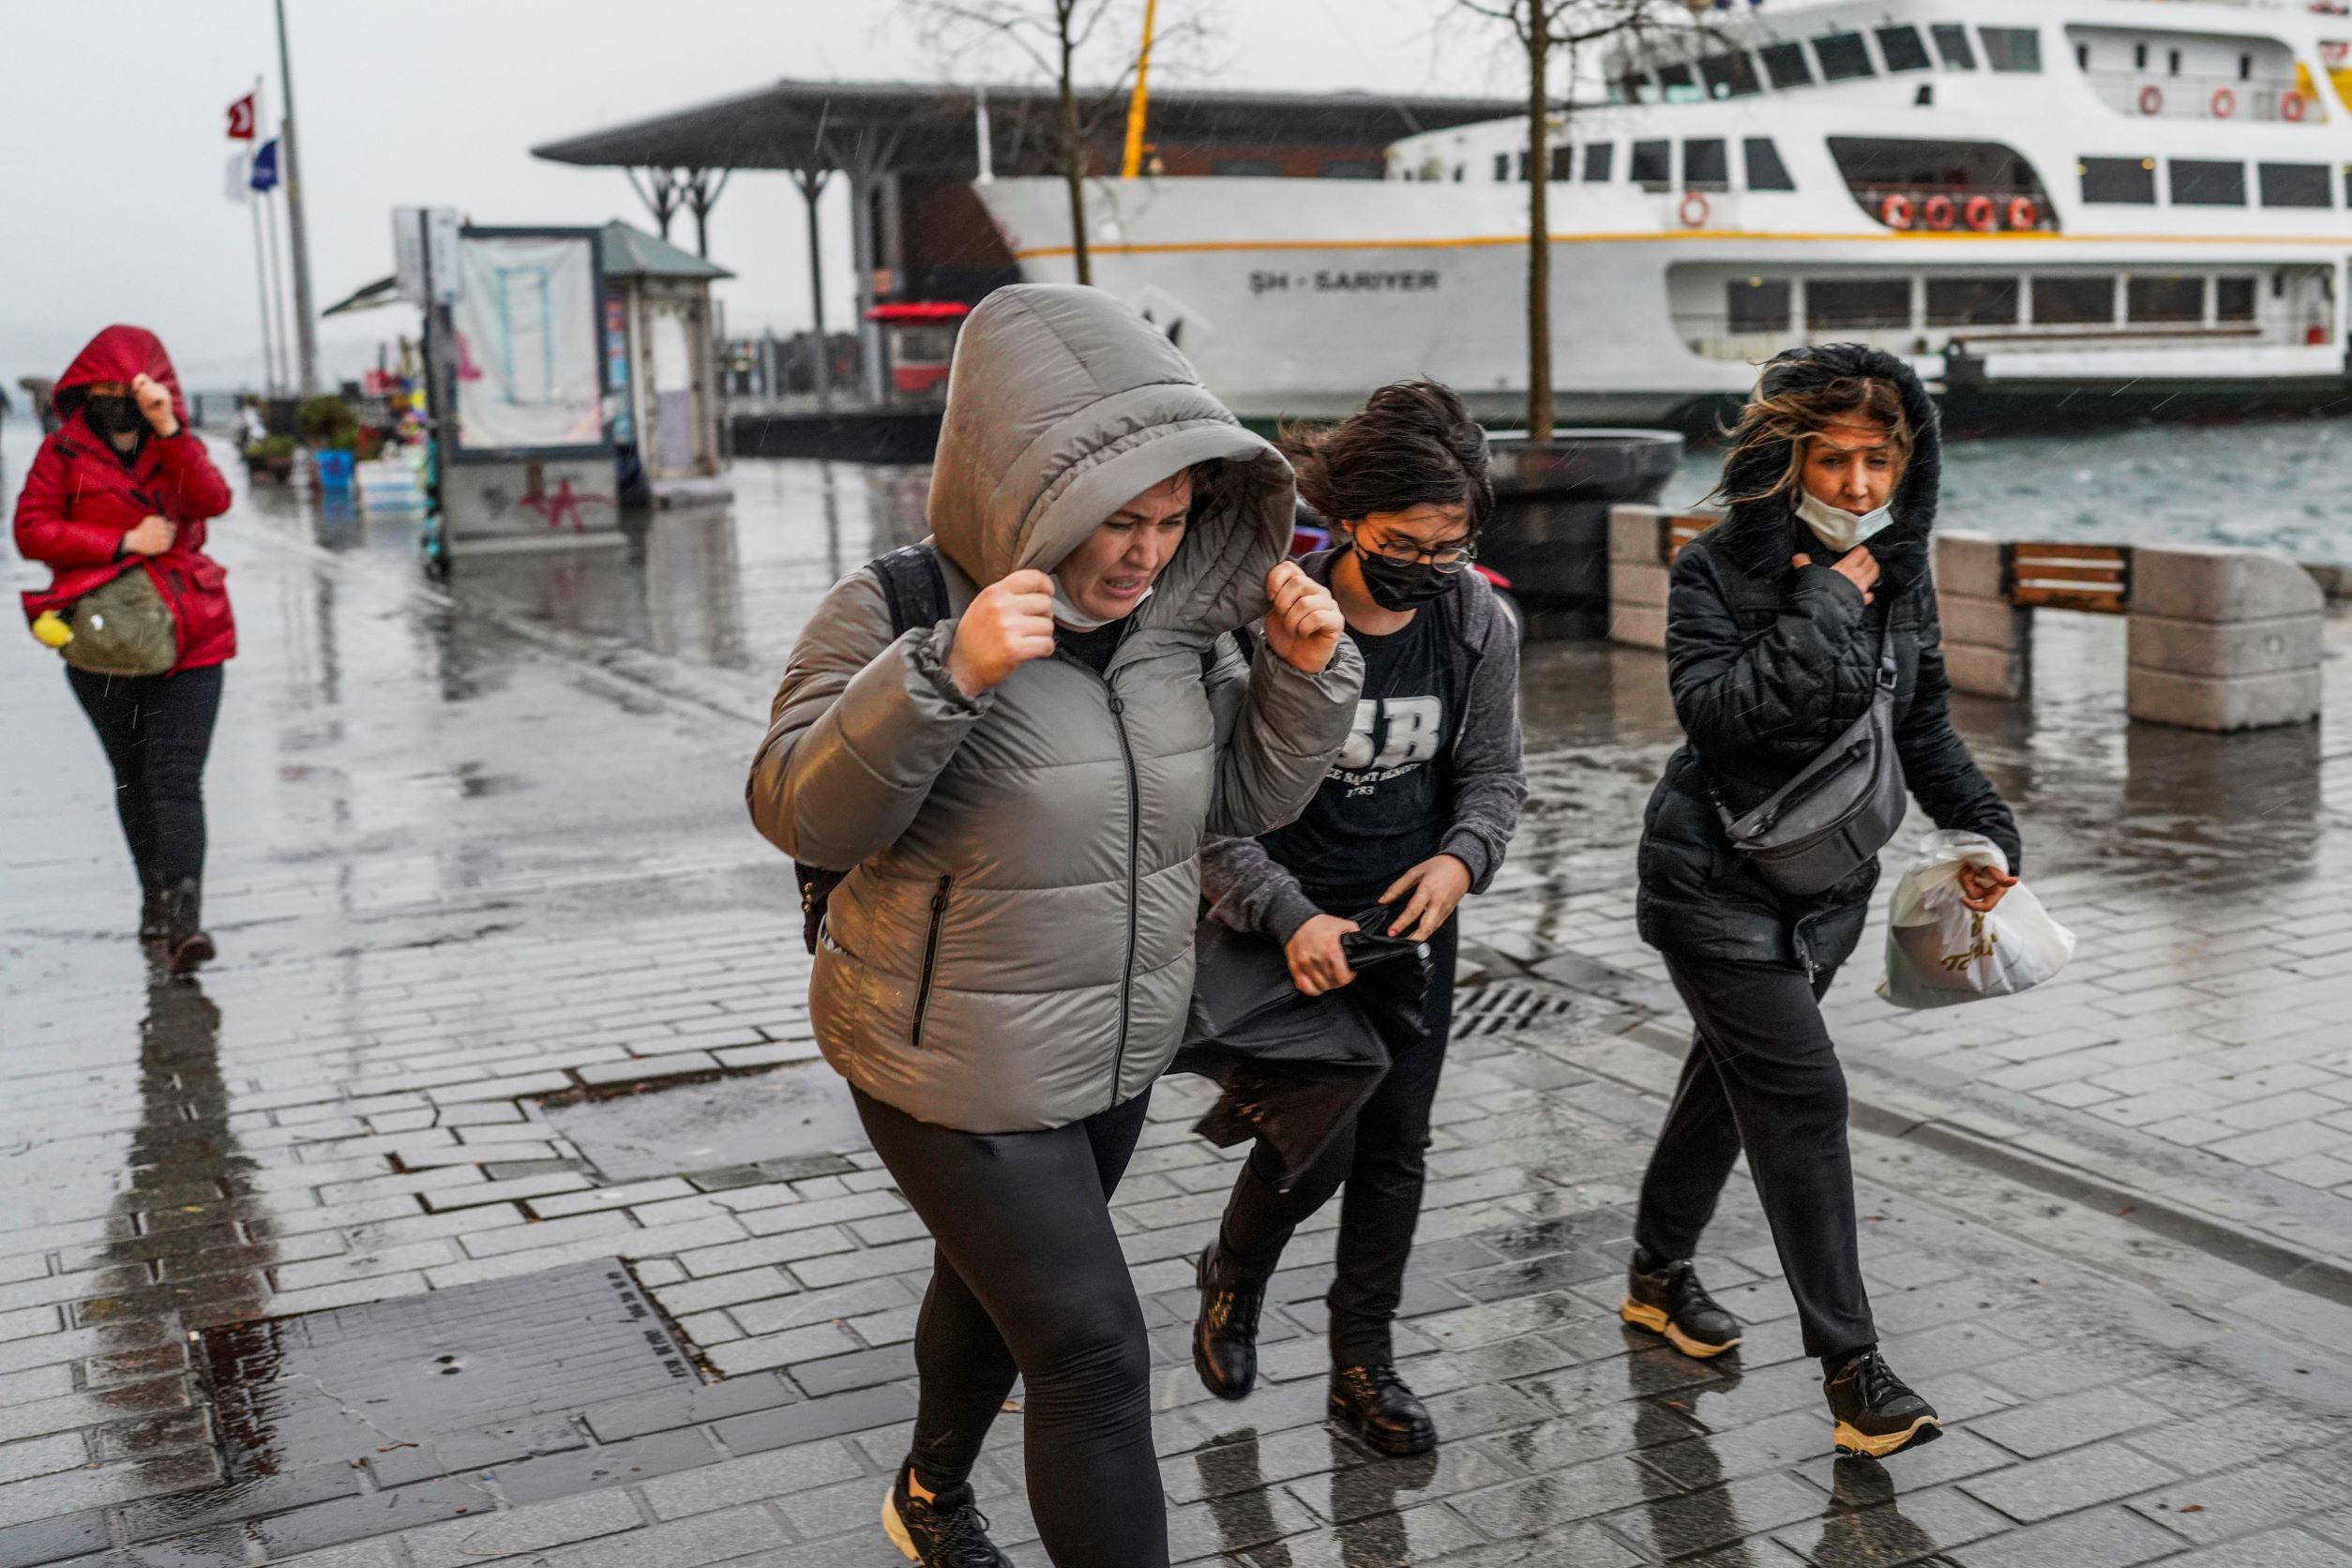 Stormy day in Istanbul, Turkey